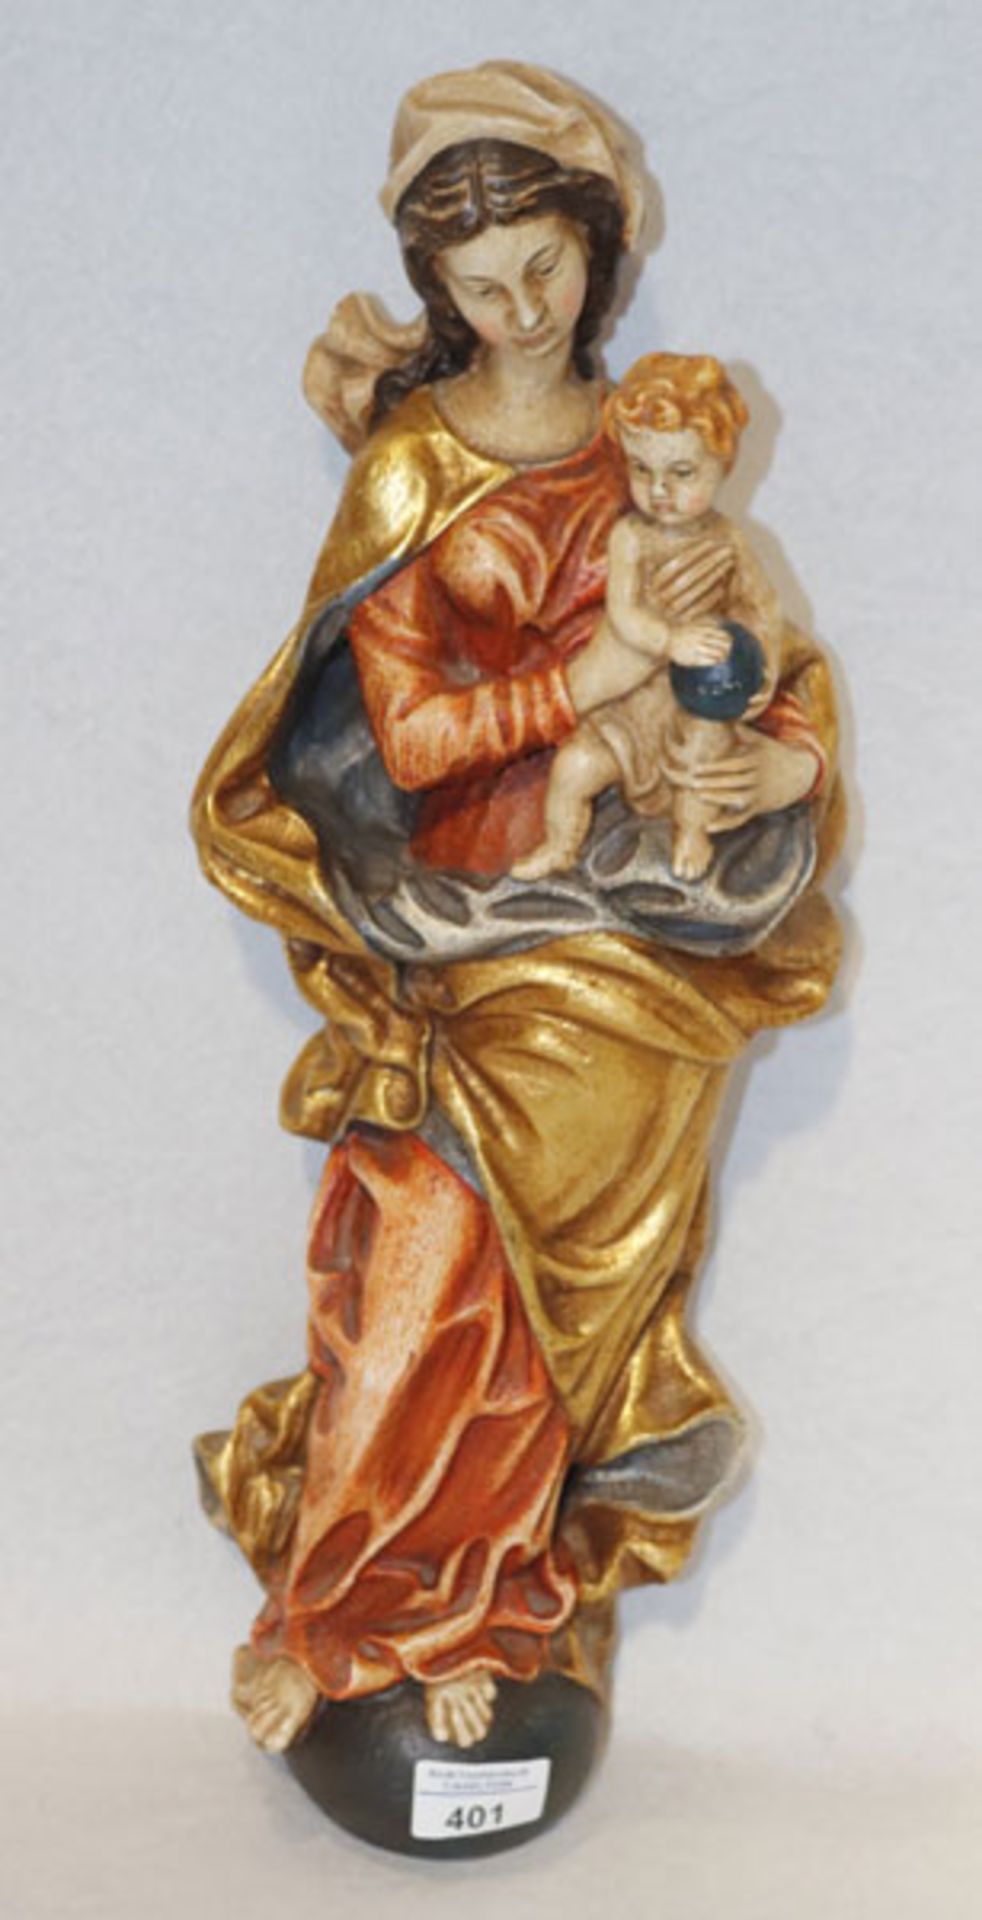 Holz Figurenskulptur 'Maria mit Kind', farbig gefaßt, am Boden bez. Corazza, Meran, H 50 cm